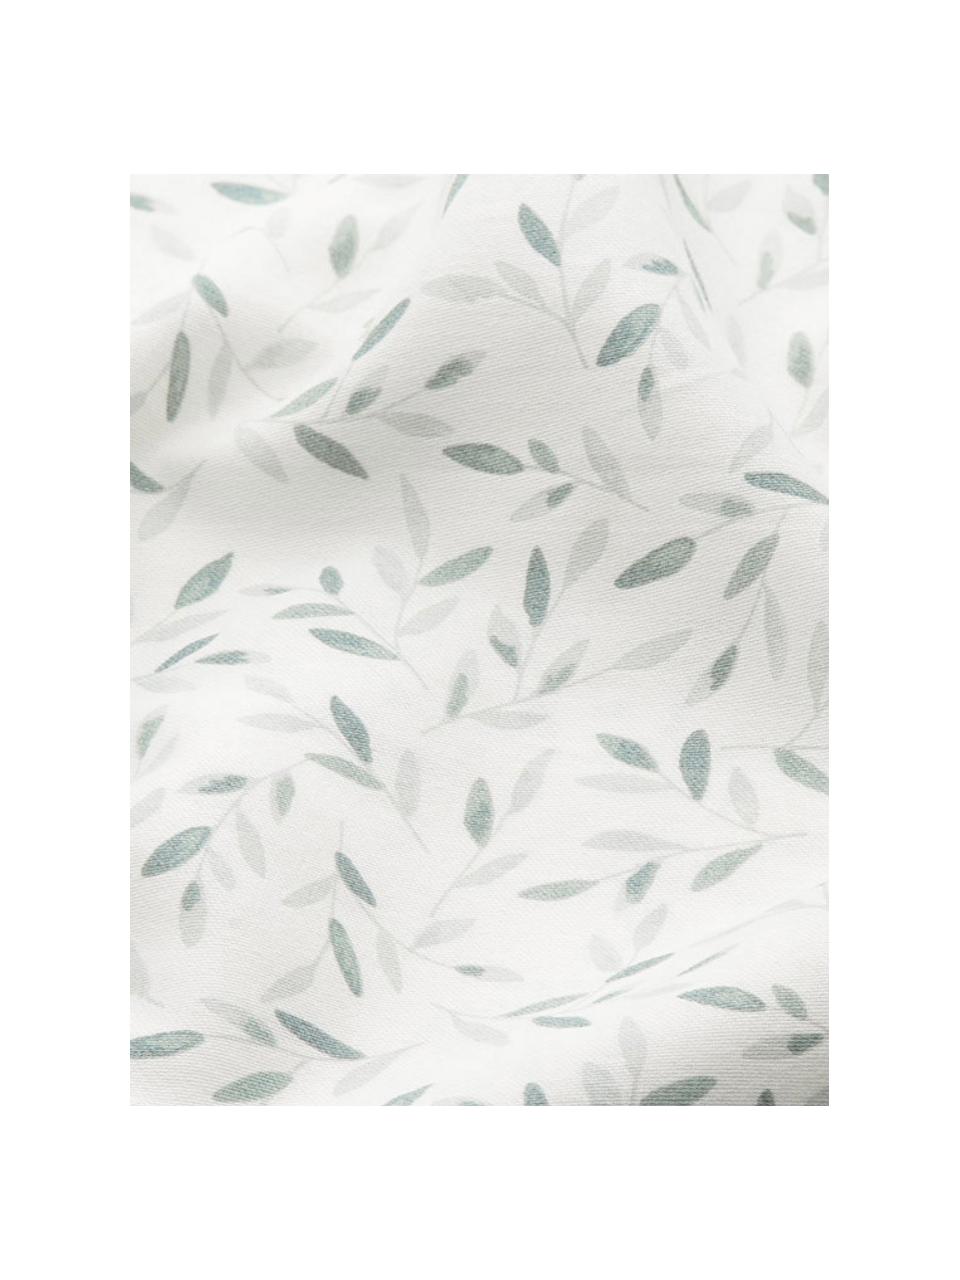 Mata do przewijaka z bawełny organicznej Green Leaves, Biały, zielony, we wzór, S 30 x D 70 cm